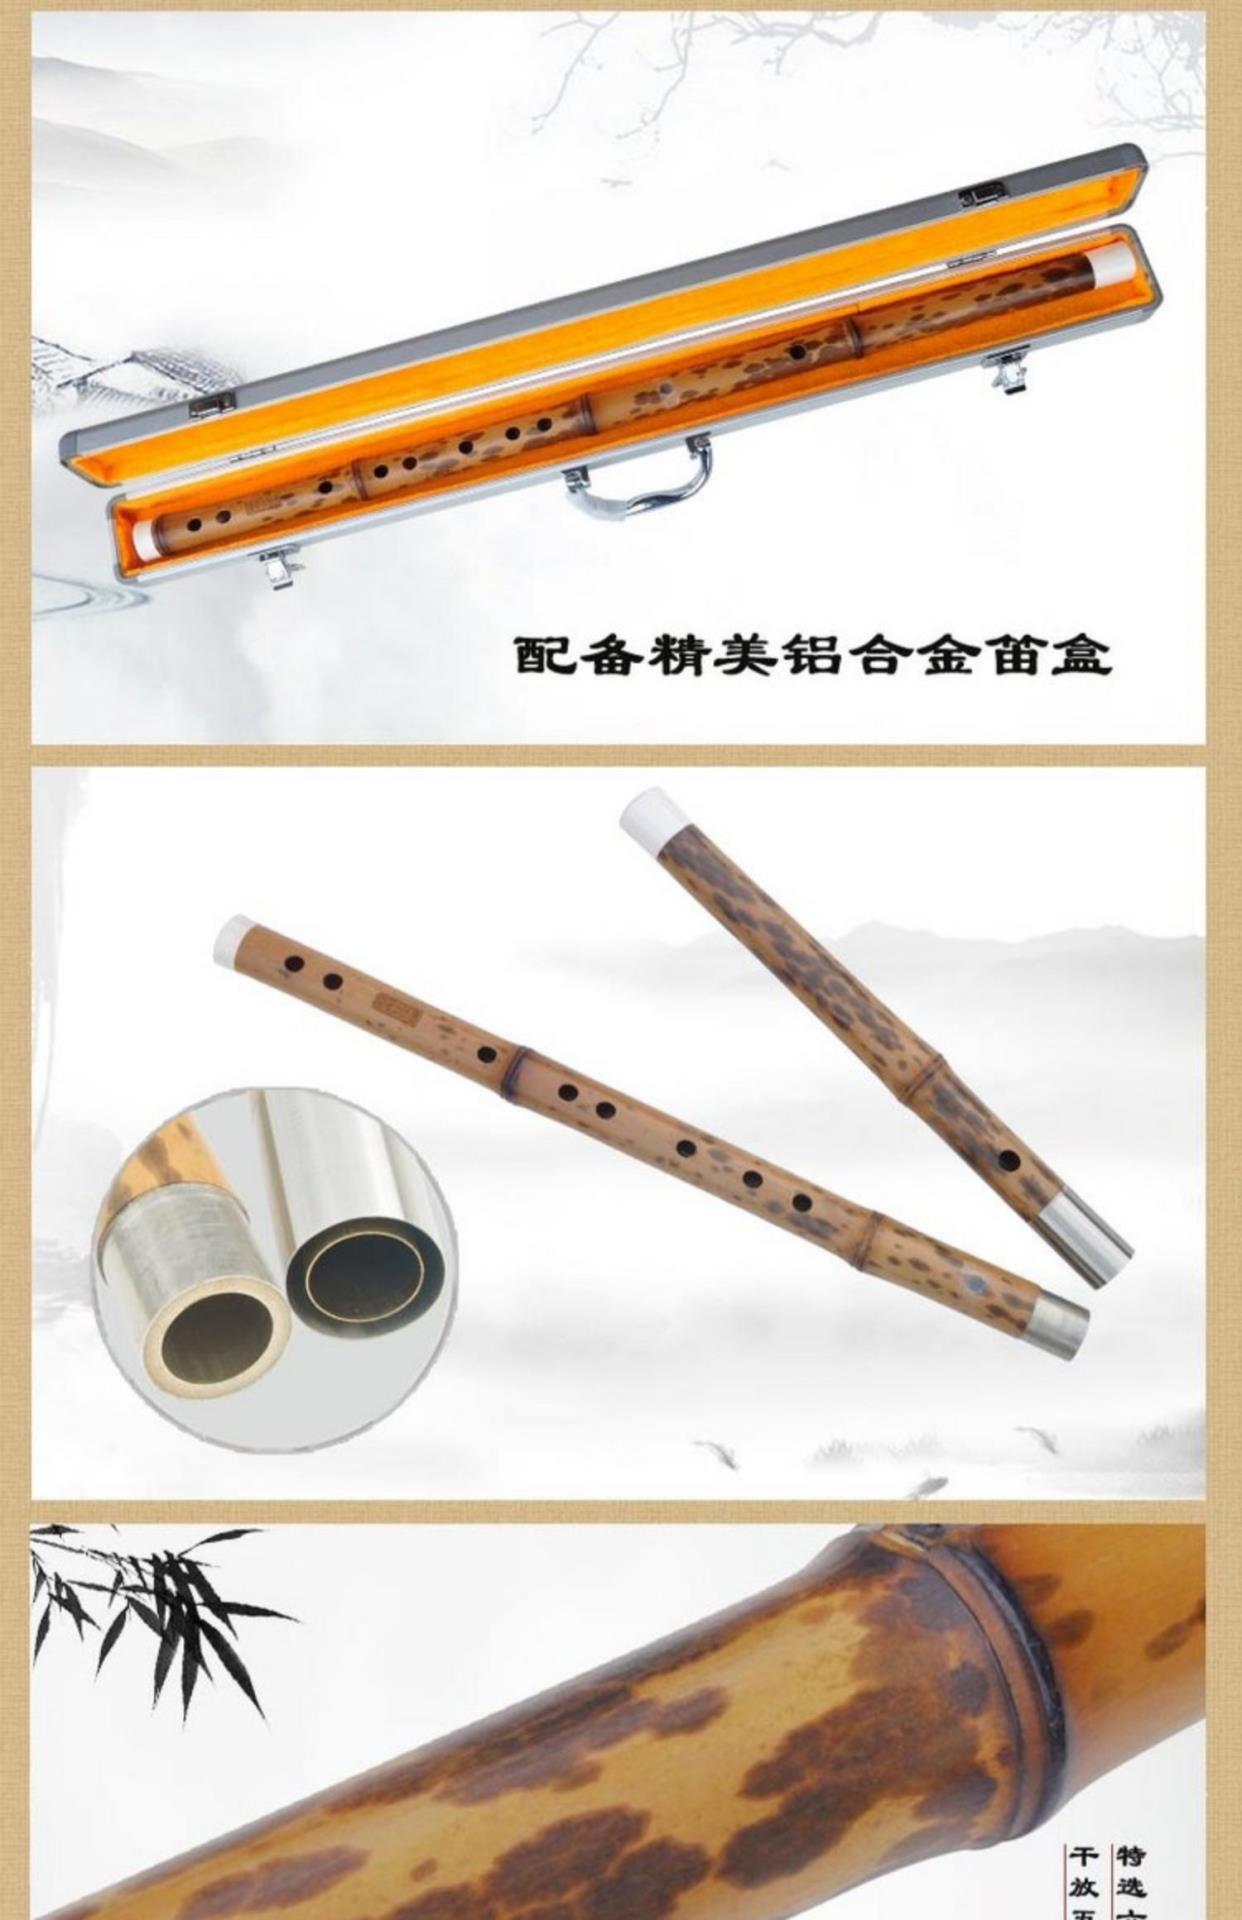 Bộ sưu tập biểu diễn chuyên nghiệp cao cấp Mr Guan Zi chỉnh tay Dappled Xiang Fei c sáo trúc d sáo ngang e nhạc cụ lớn - Nhạc cụ dân tộc